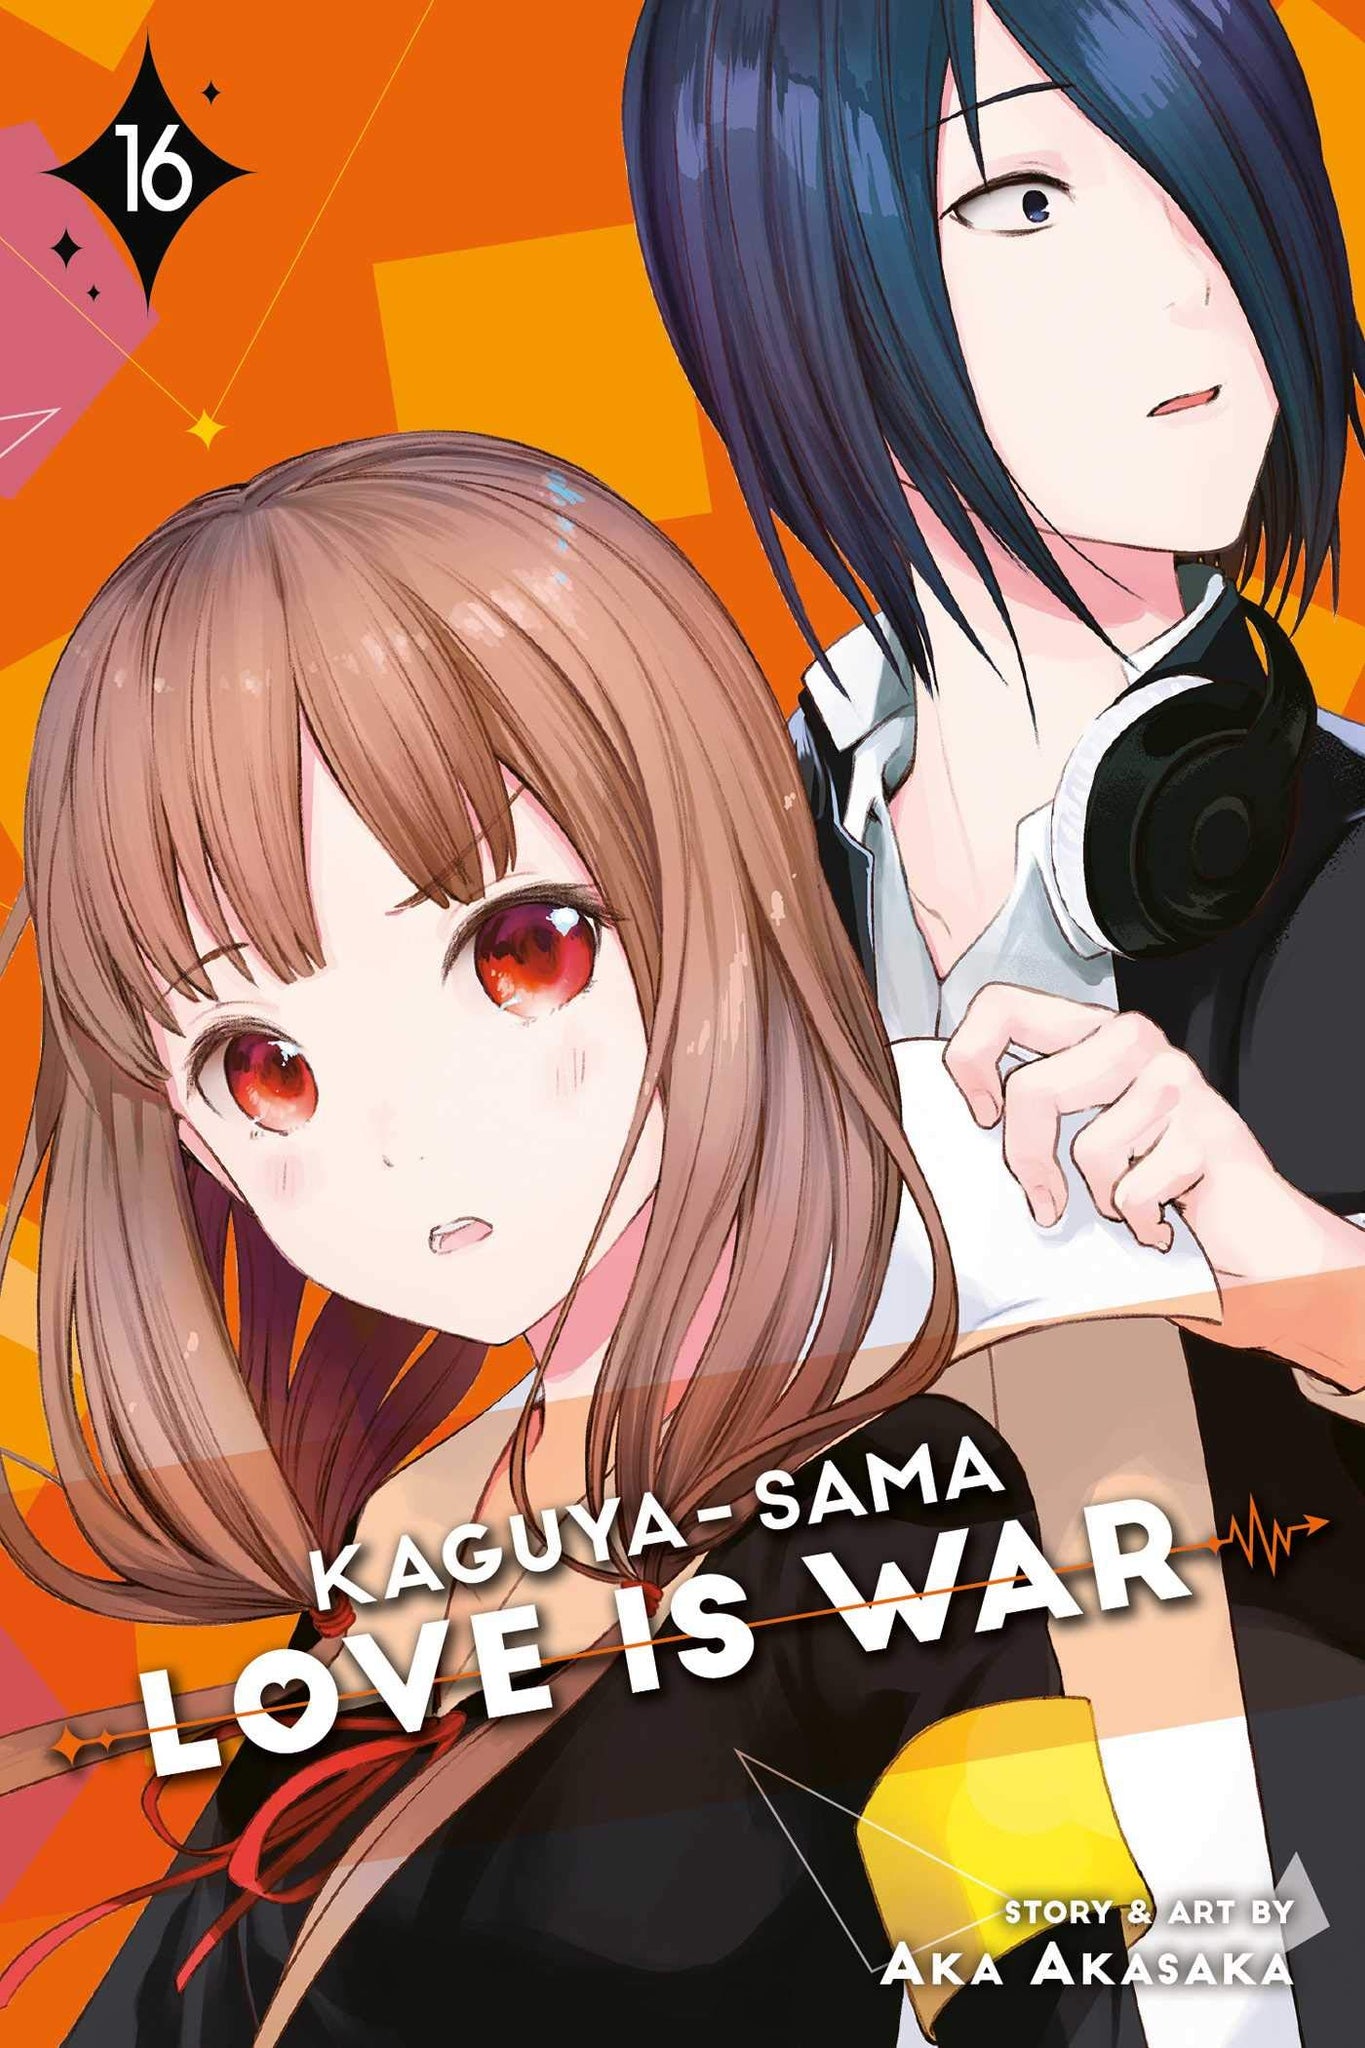 Kaguya-sama : Love Is War #16 - Paperback